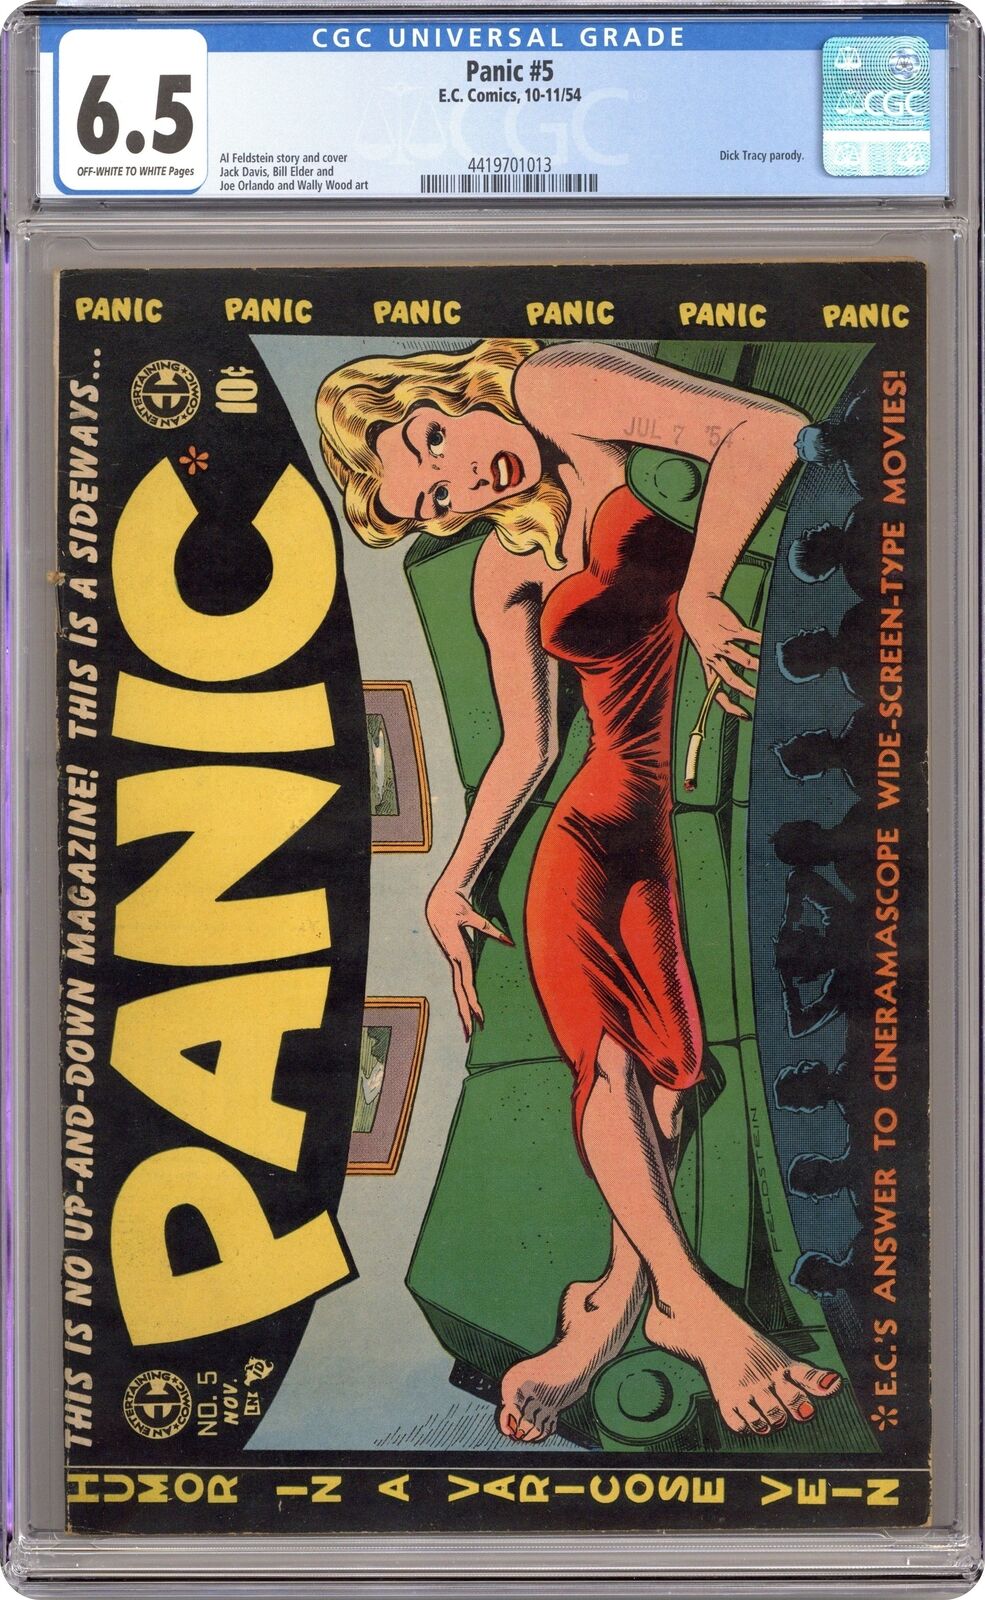 Panic #5 CGC 6.5 1954 4419701013